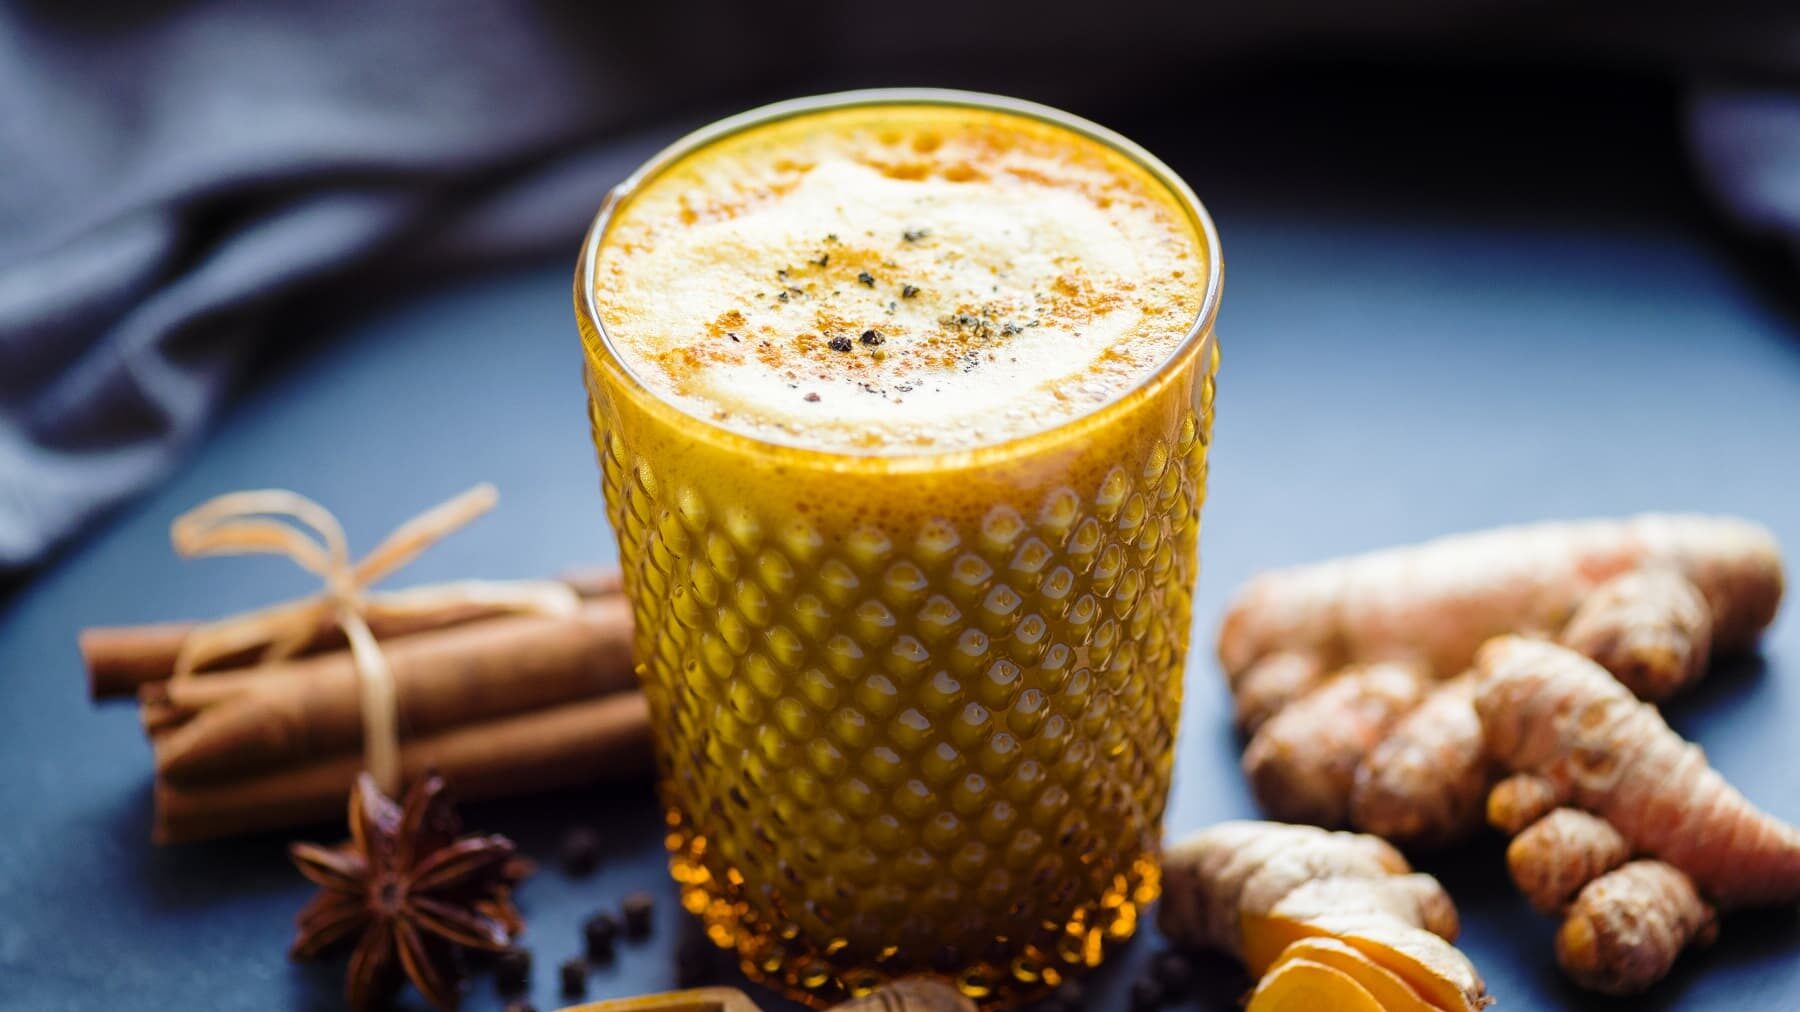 Goldene Milch in einem Glas auf einer Schieferplatte neben Kurkuma, Zimt und Anis vor einem dunklen Tuch.